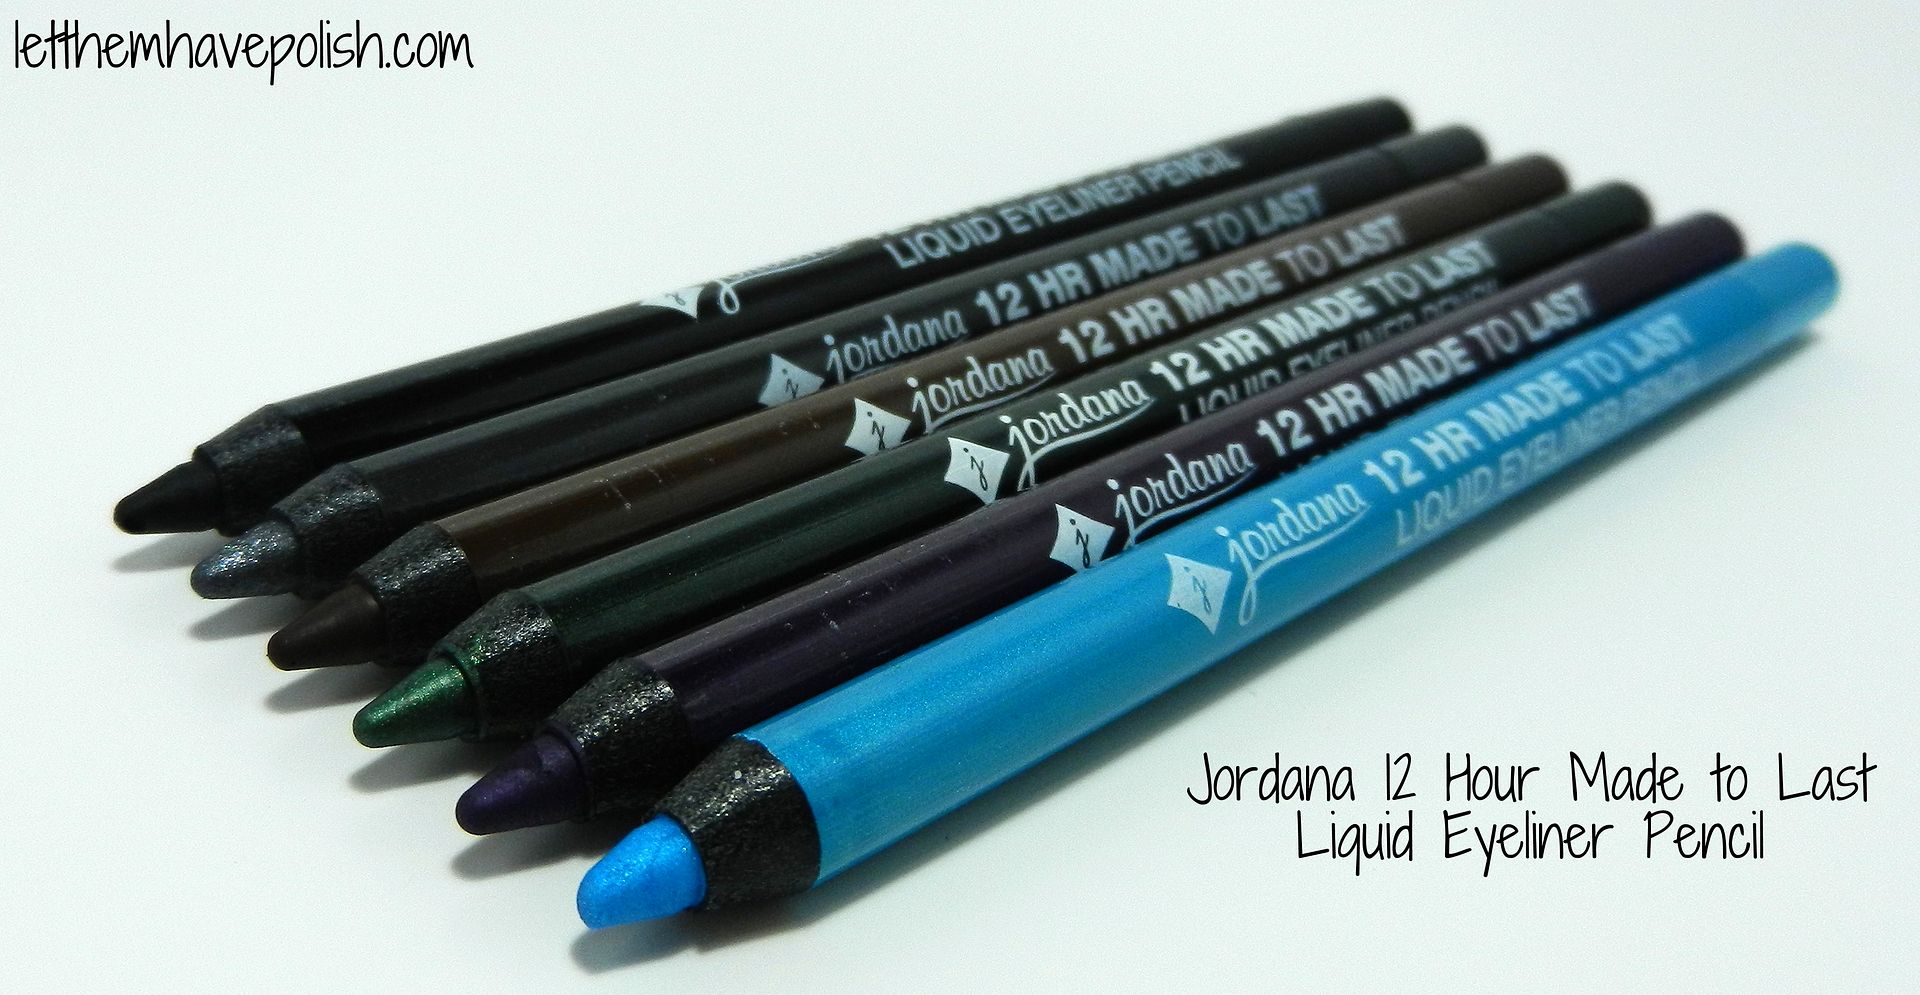 Jordana 12 Hr. Made to Last Liquid Liner Pencil photo DSCN8673_zps873f5962.jpg